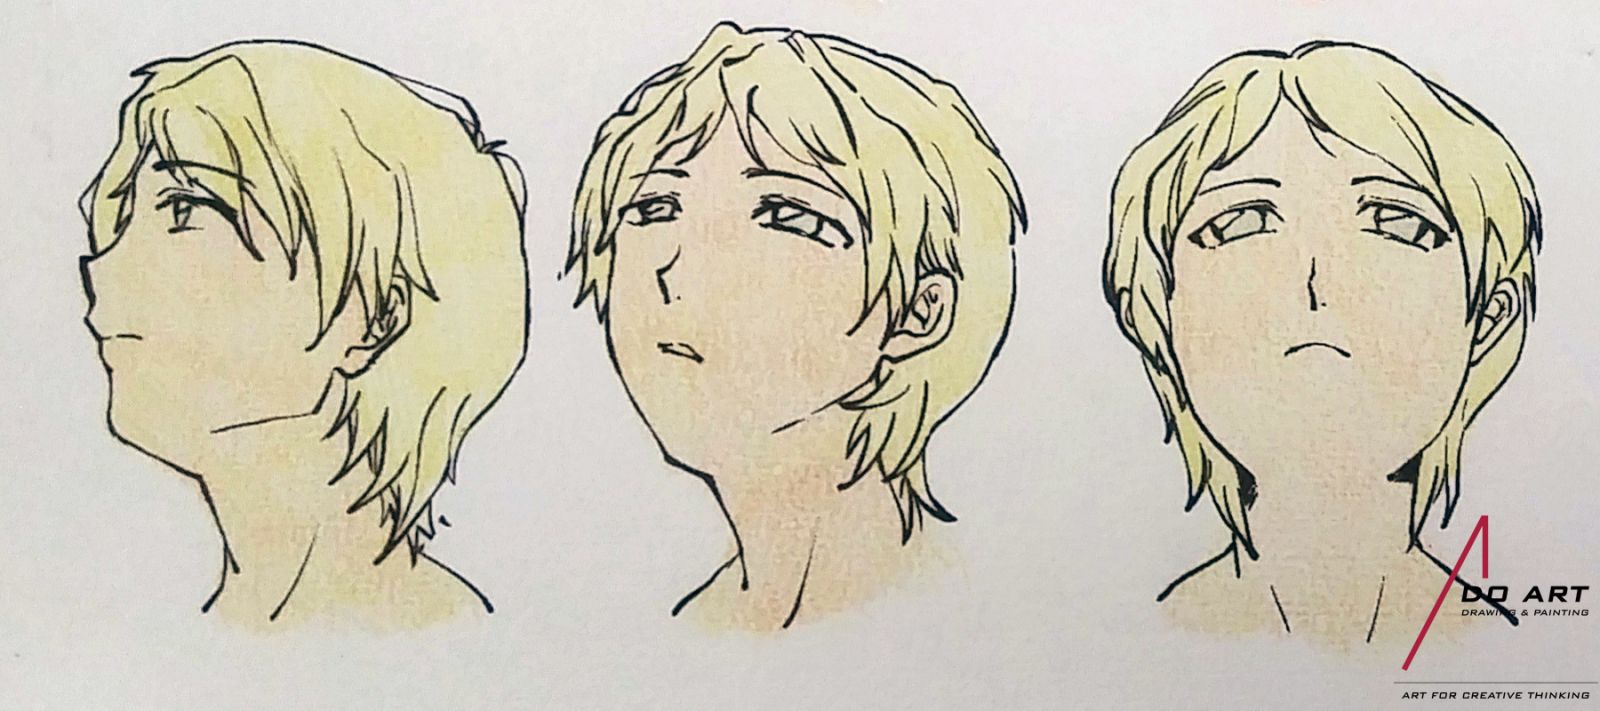 Cậu bé với tóc trắng là nhân vật quen thuộc trong thế giới anime và manga. Hãy chiêm ngưỡng các bức tranh về chân dung cậu bé với nhiều phong cách khác nhau, nhưng vẫn giữ được nét đẹp và sự hài hòa của các đường nét vẽ. Bức tranh tuy nhỏ nhưng thu hút bởi sự chân thực và tinh tế của chiếc bút.